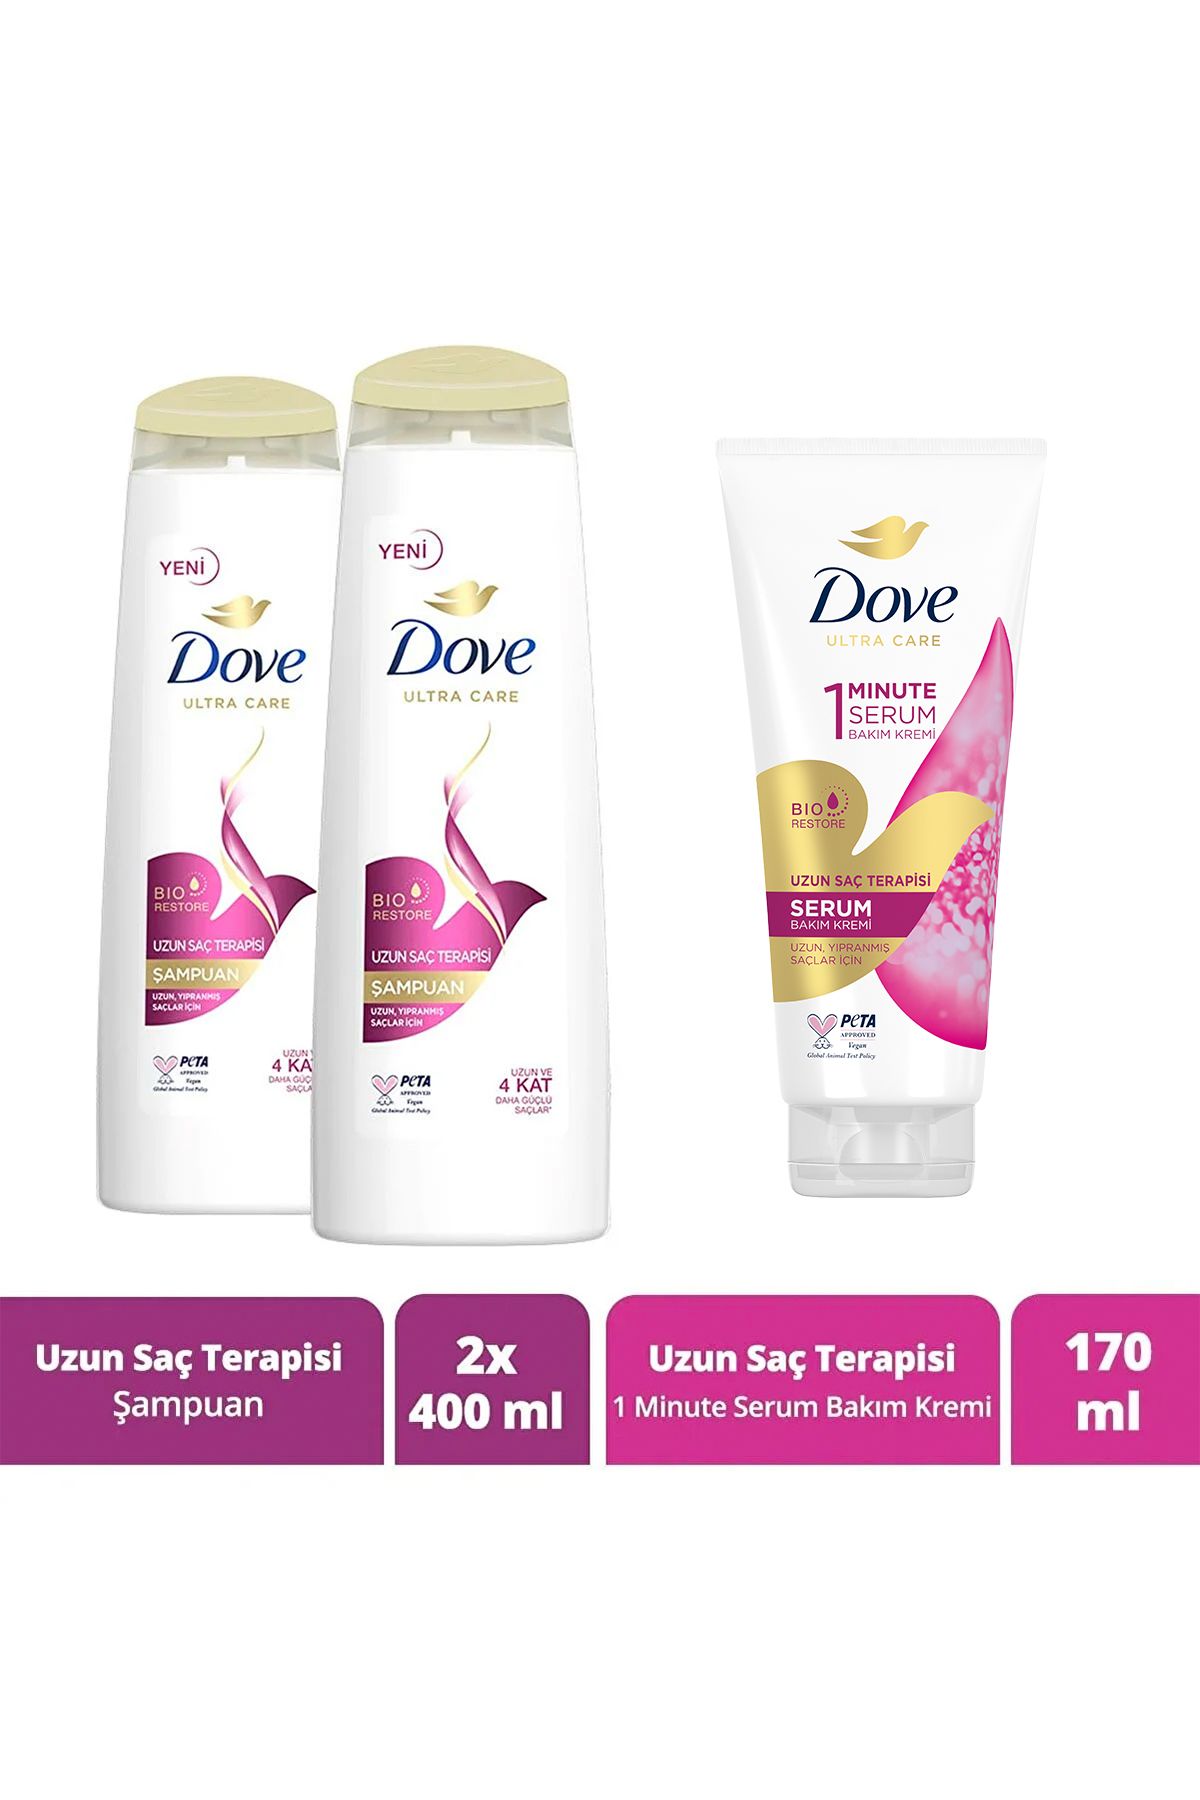 Dove Ultra Care Saç Bakım Şampuanı Uzun Saç Terapisi 400 ml X2 1 Minute Serum Bakım Kremi 170 ml